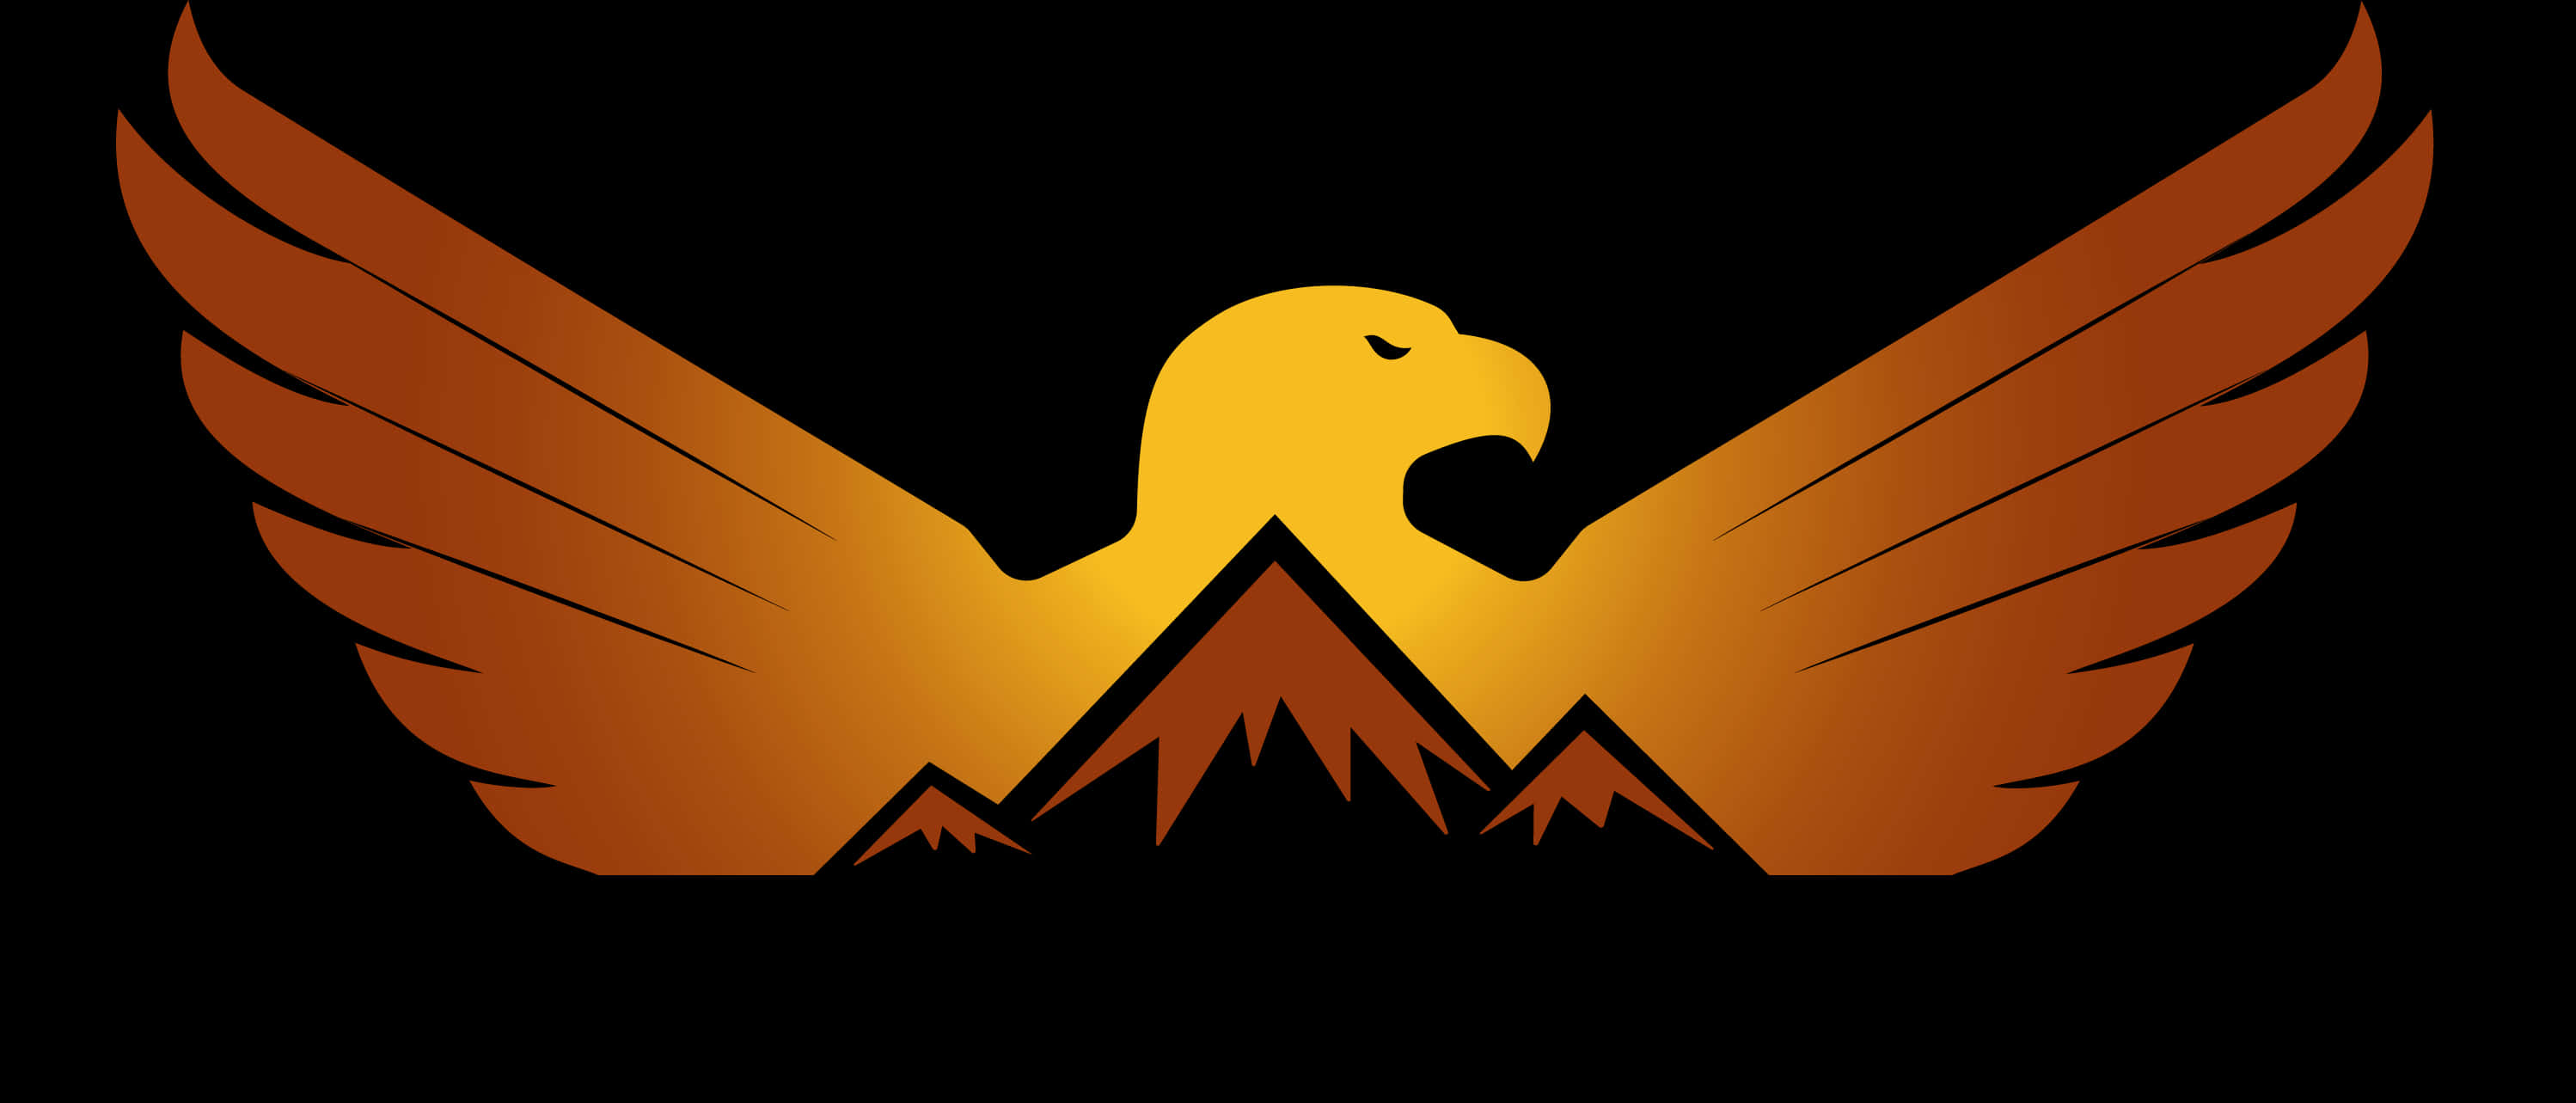 A Logo Of A Bird With Mountains